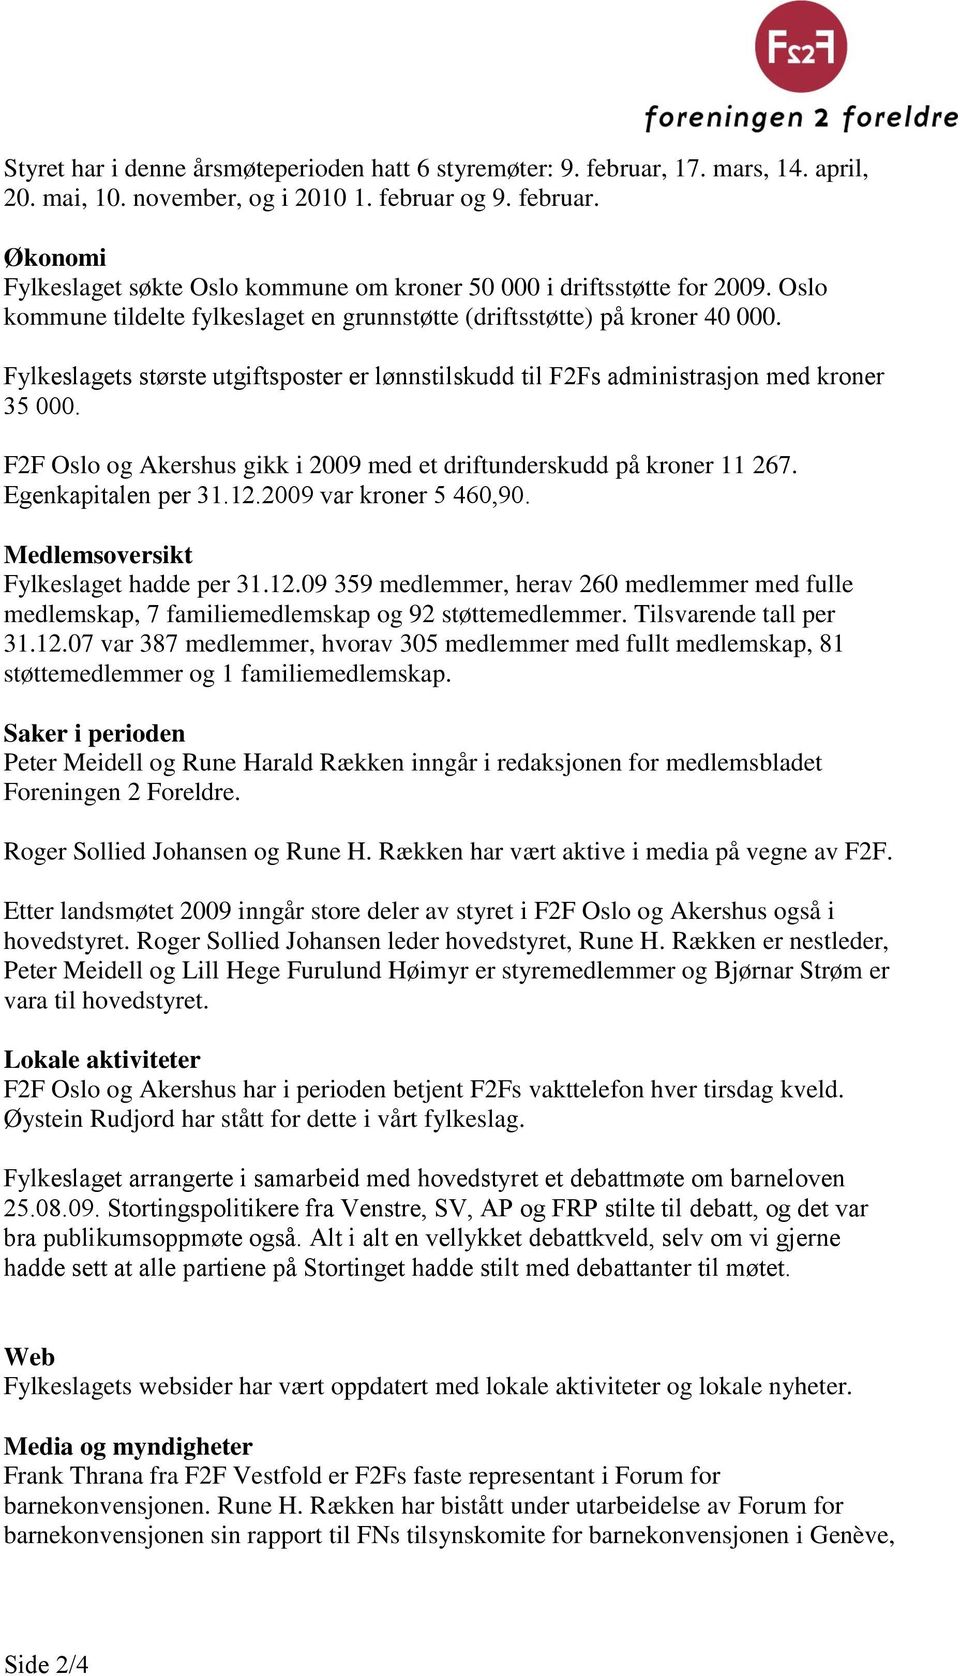 F2F Oslo og Akershus gikk i 2009 med et driftunderskudd på kroner 11 267. Egenkapitalen per 31.12.2009 var kroner 5 460,90. Medlemsoversikt Fylkeslaget hadde per 31.12.09 359 medlemmer, herav 260 medlemmer med fulle medlemskap, 7 familiemedlemskap og 92 støttemedlemmer.